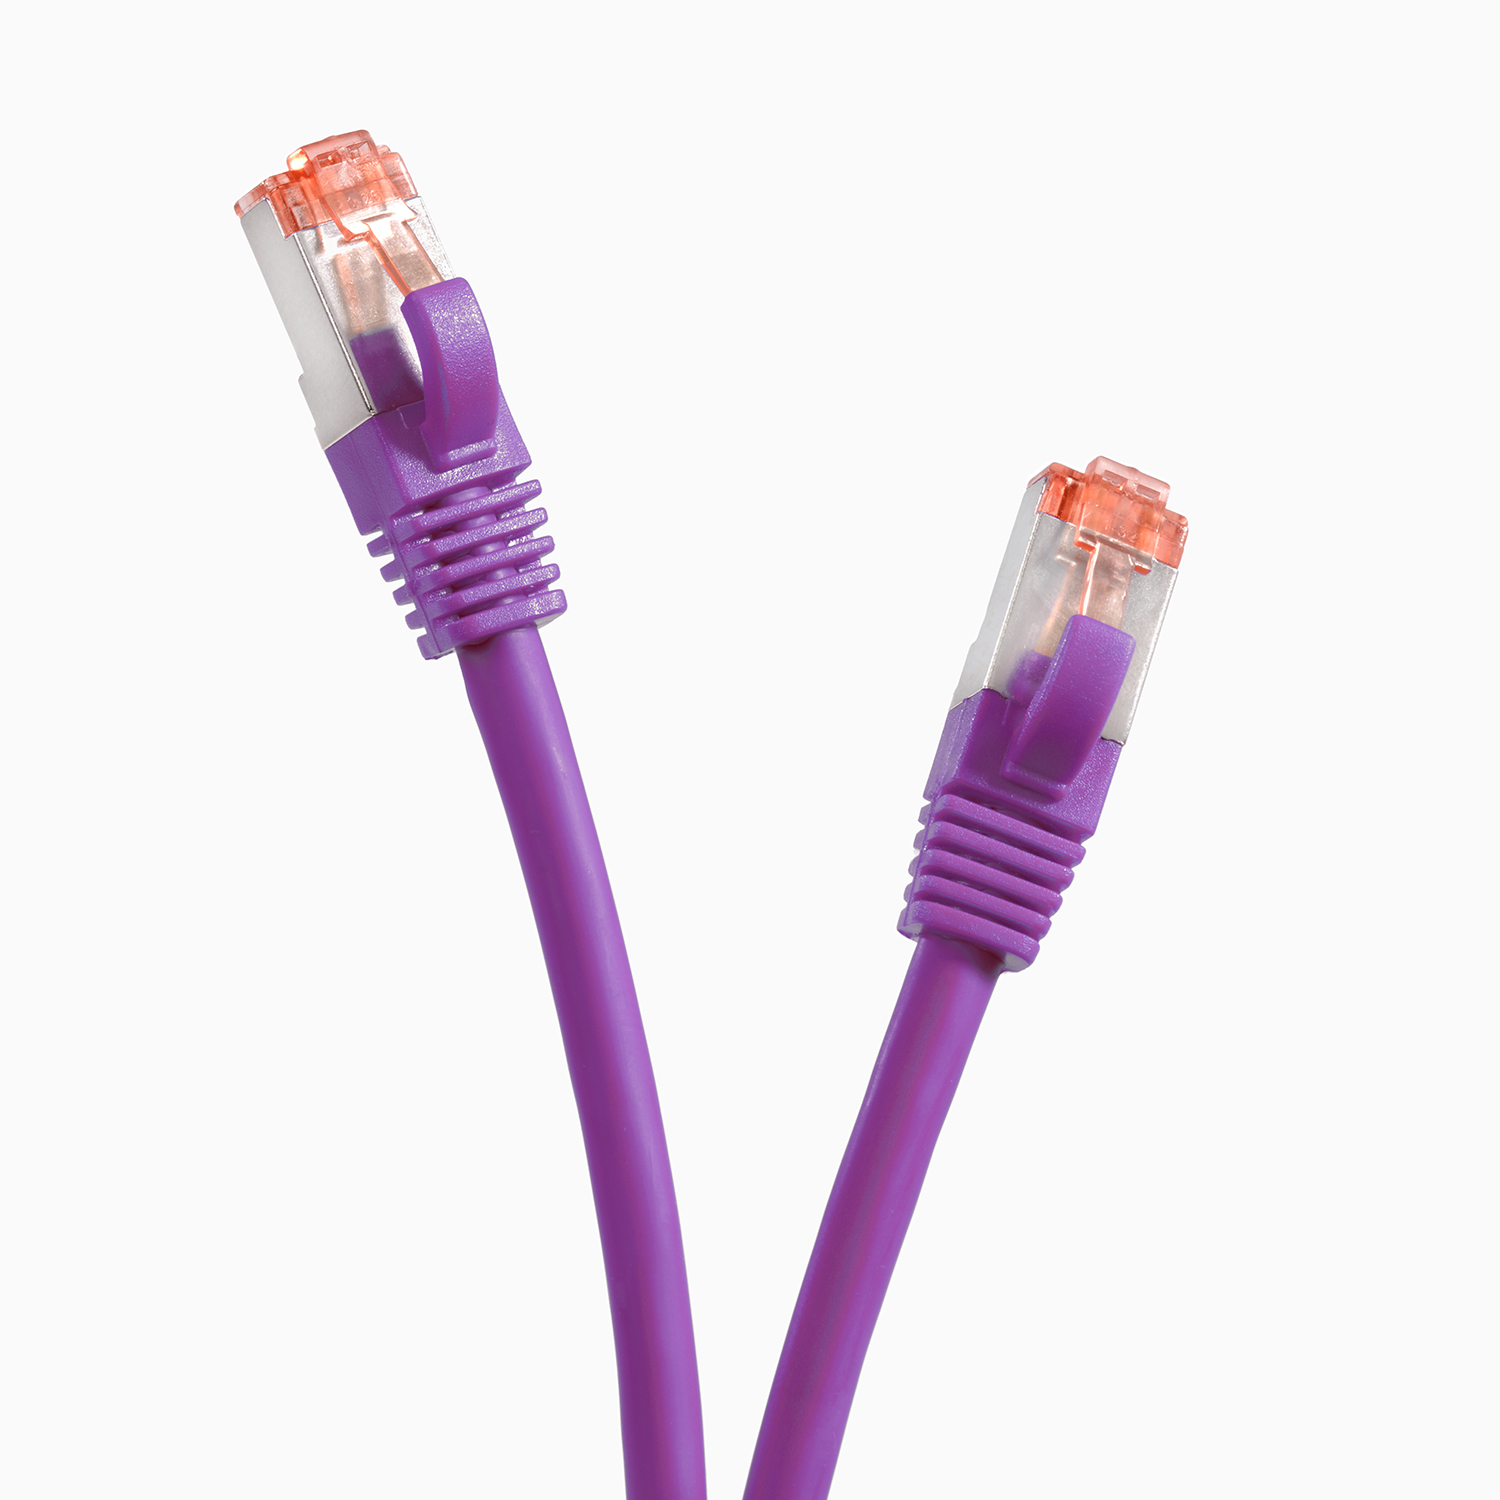 TPFNET 5er Pack 1m Patchkabel 1 1000Mbit, m S/FTP / violett, Netzwerkkabel, Netzwerkkabel